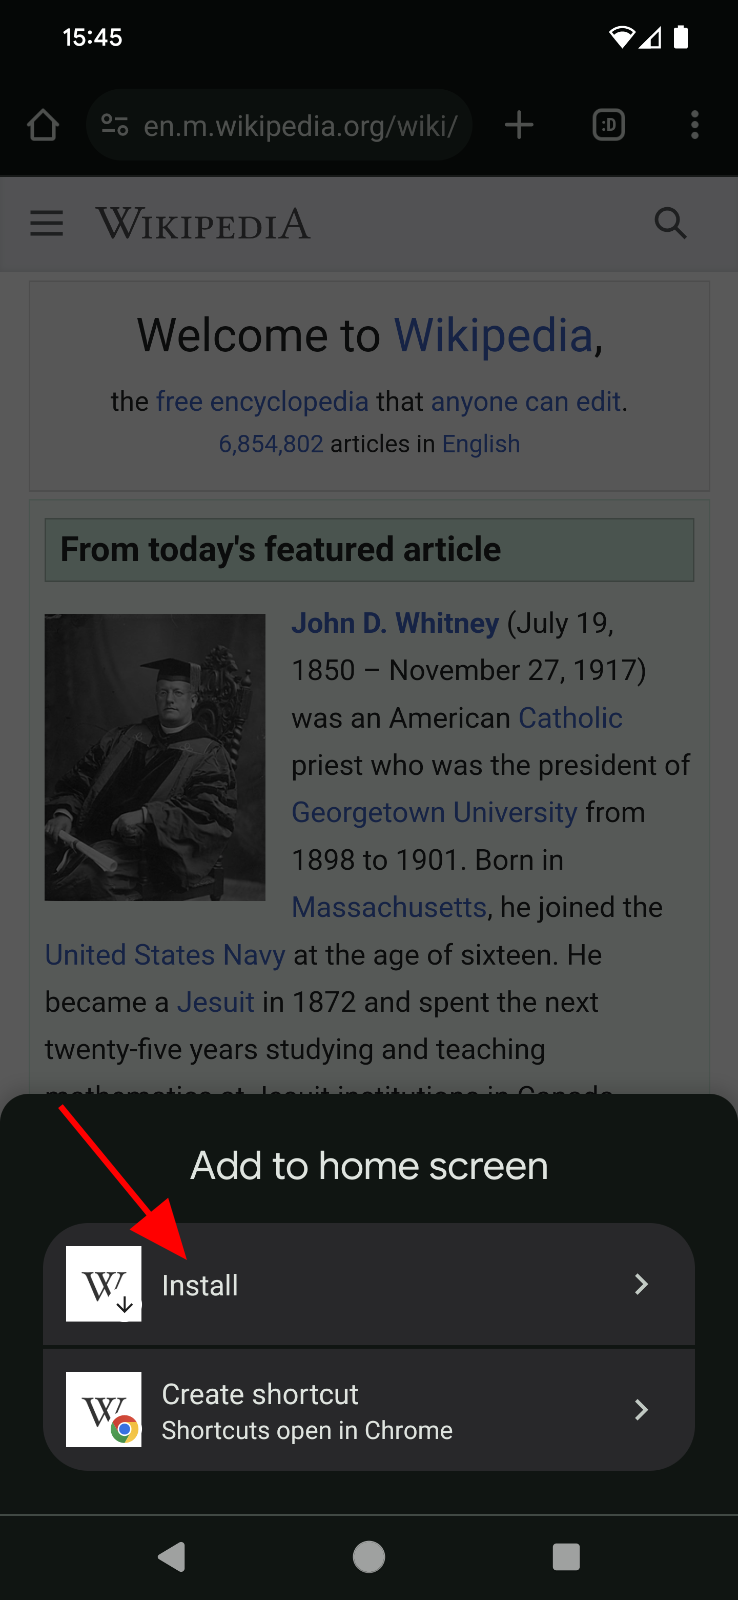 ウィキペディアのウェブサイトの「ホーム画面に追加」プロンプト。